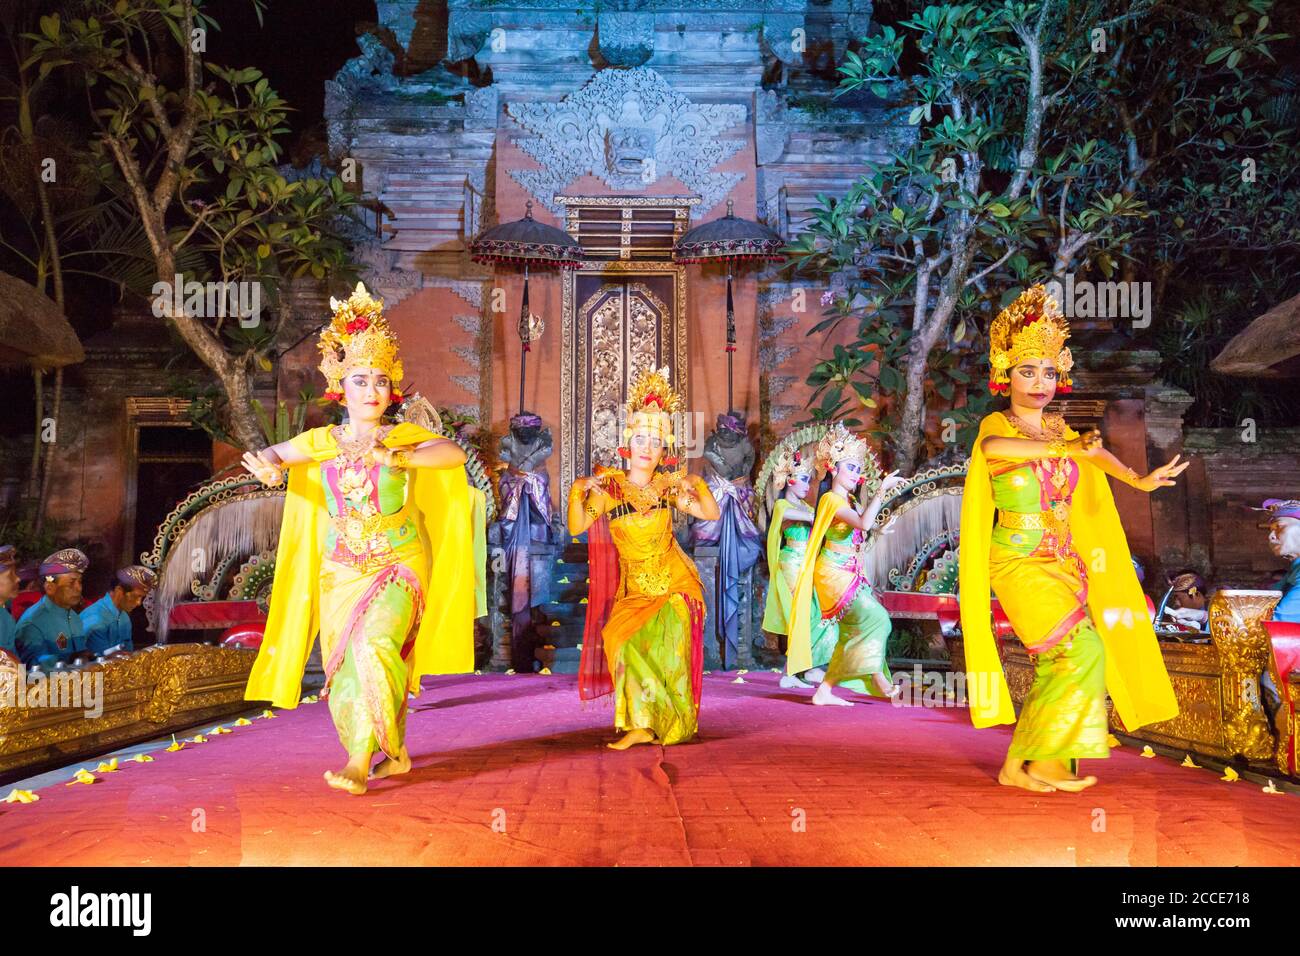 Presentation of Ramayana Epic, Princely Palace, Ubud, Bali Stock Photo